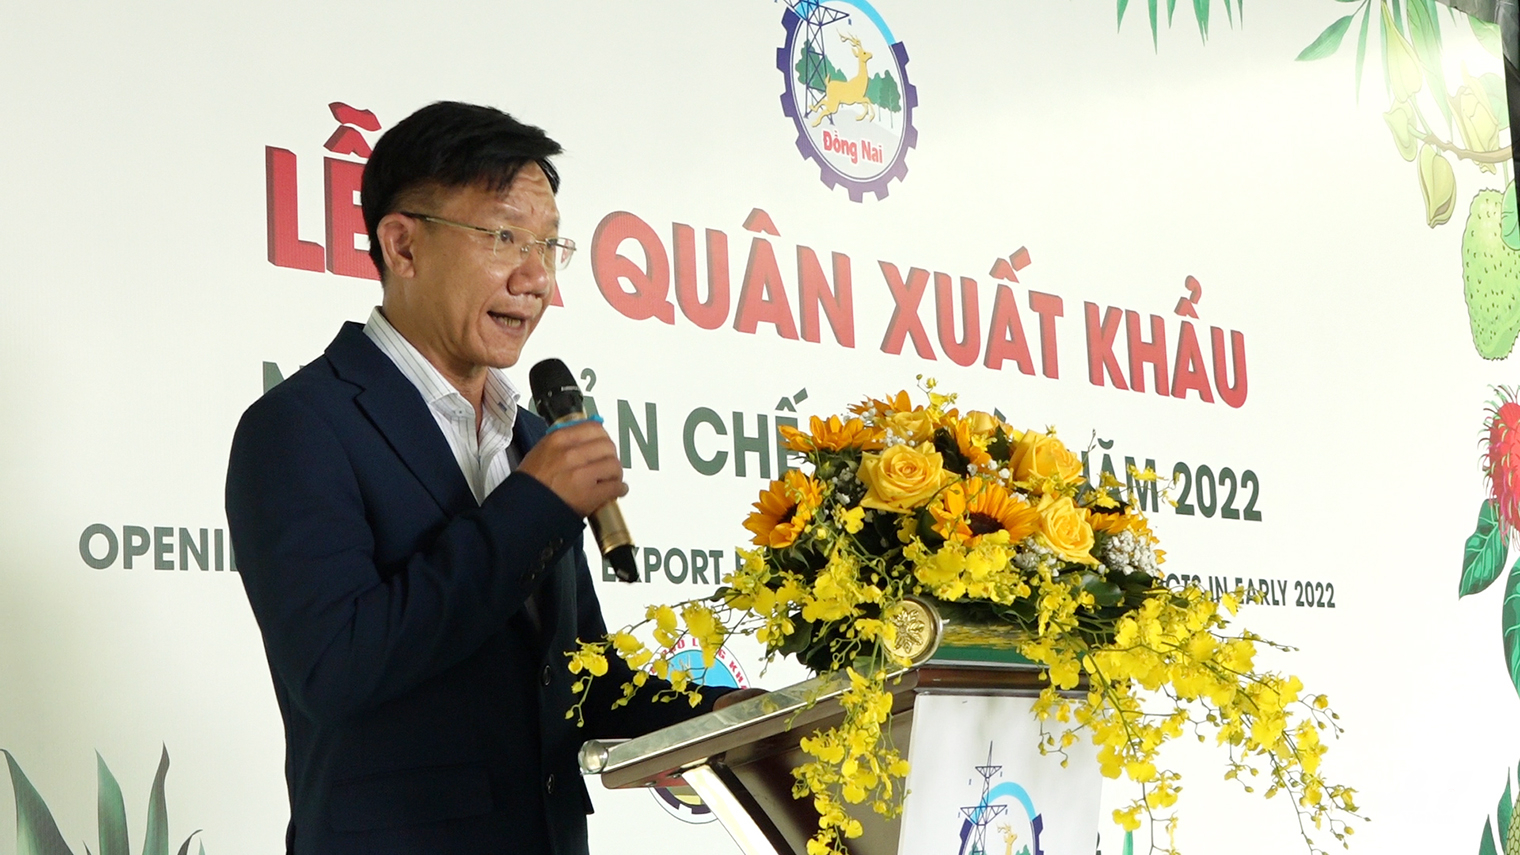 Ông Hồ Quốc Thái, Chủ tịch HĐQT Công ty Lương Giang phấn khởi chia sẻ về lô hàng trái cây chế biến xuất khẩu đầu năm 2022. Ảnh: Minh Sáng.